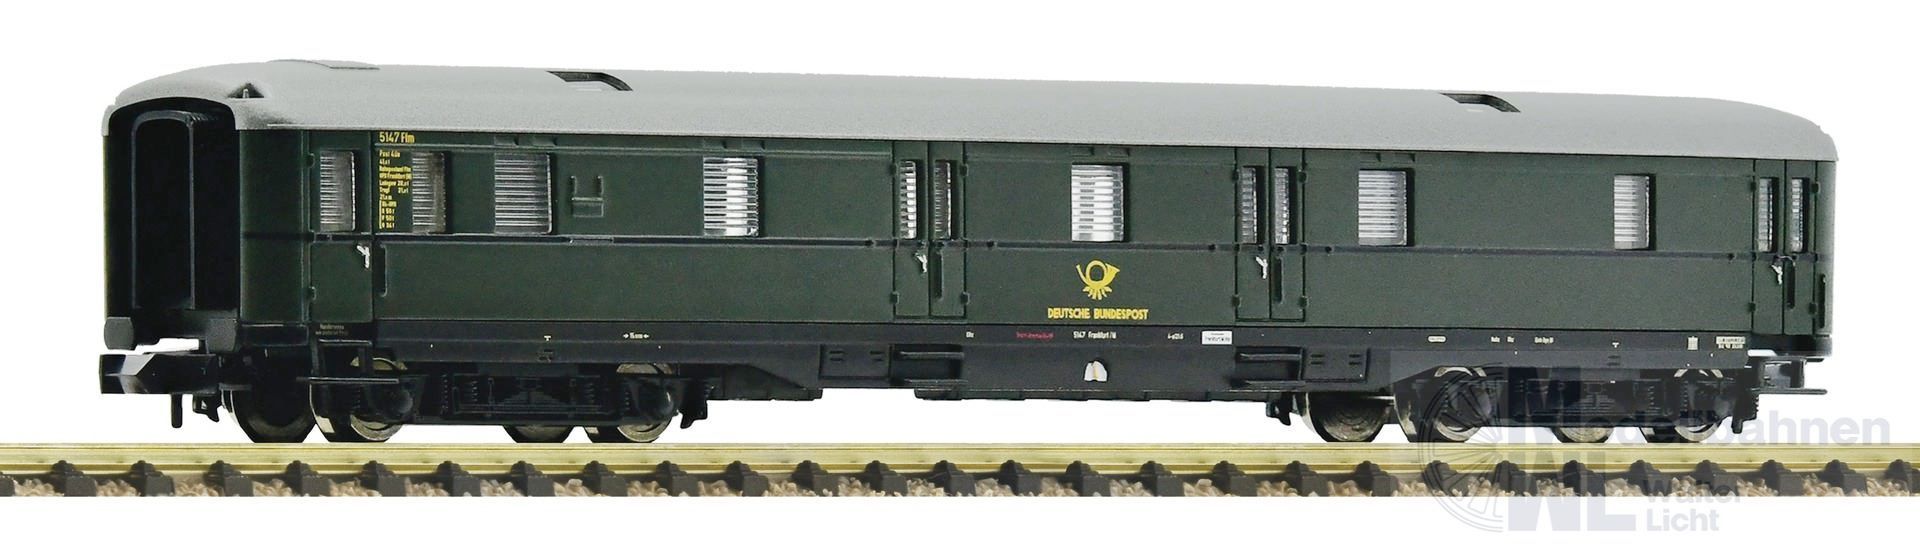 Fleischmann 6260005 - Schürzen Postwagen DB Ep.III N 1:160